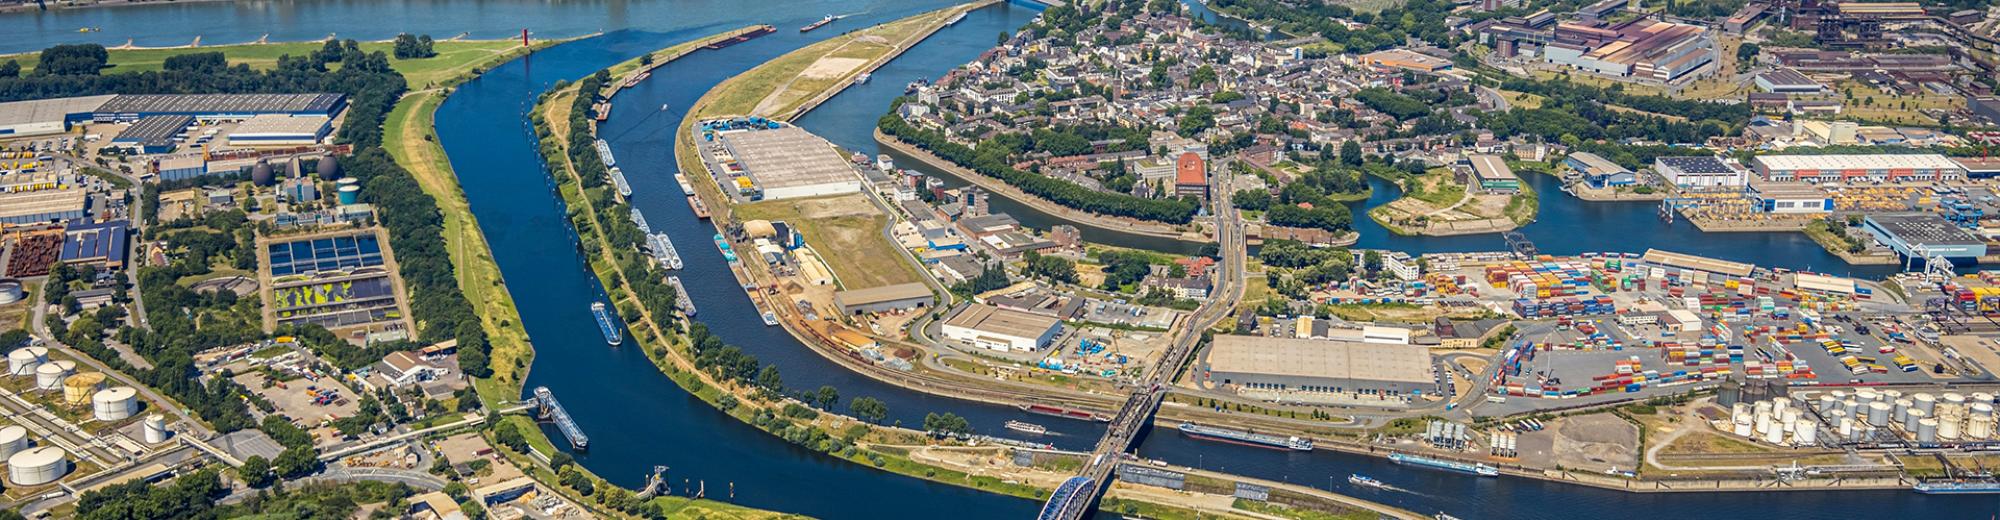 Duisburg ist der Logistik-Hotspot von Europa – und Seacon ist mittendrin